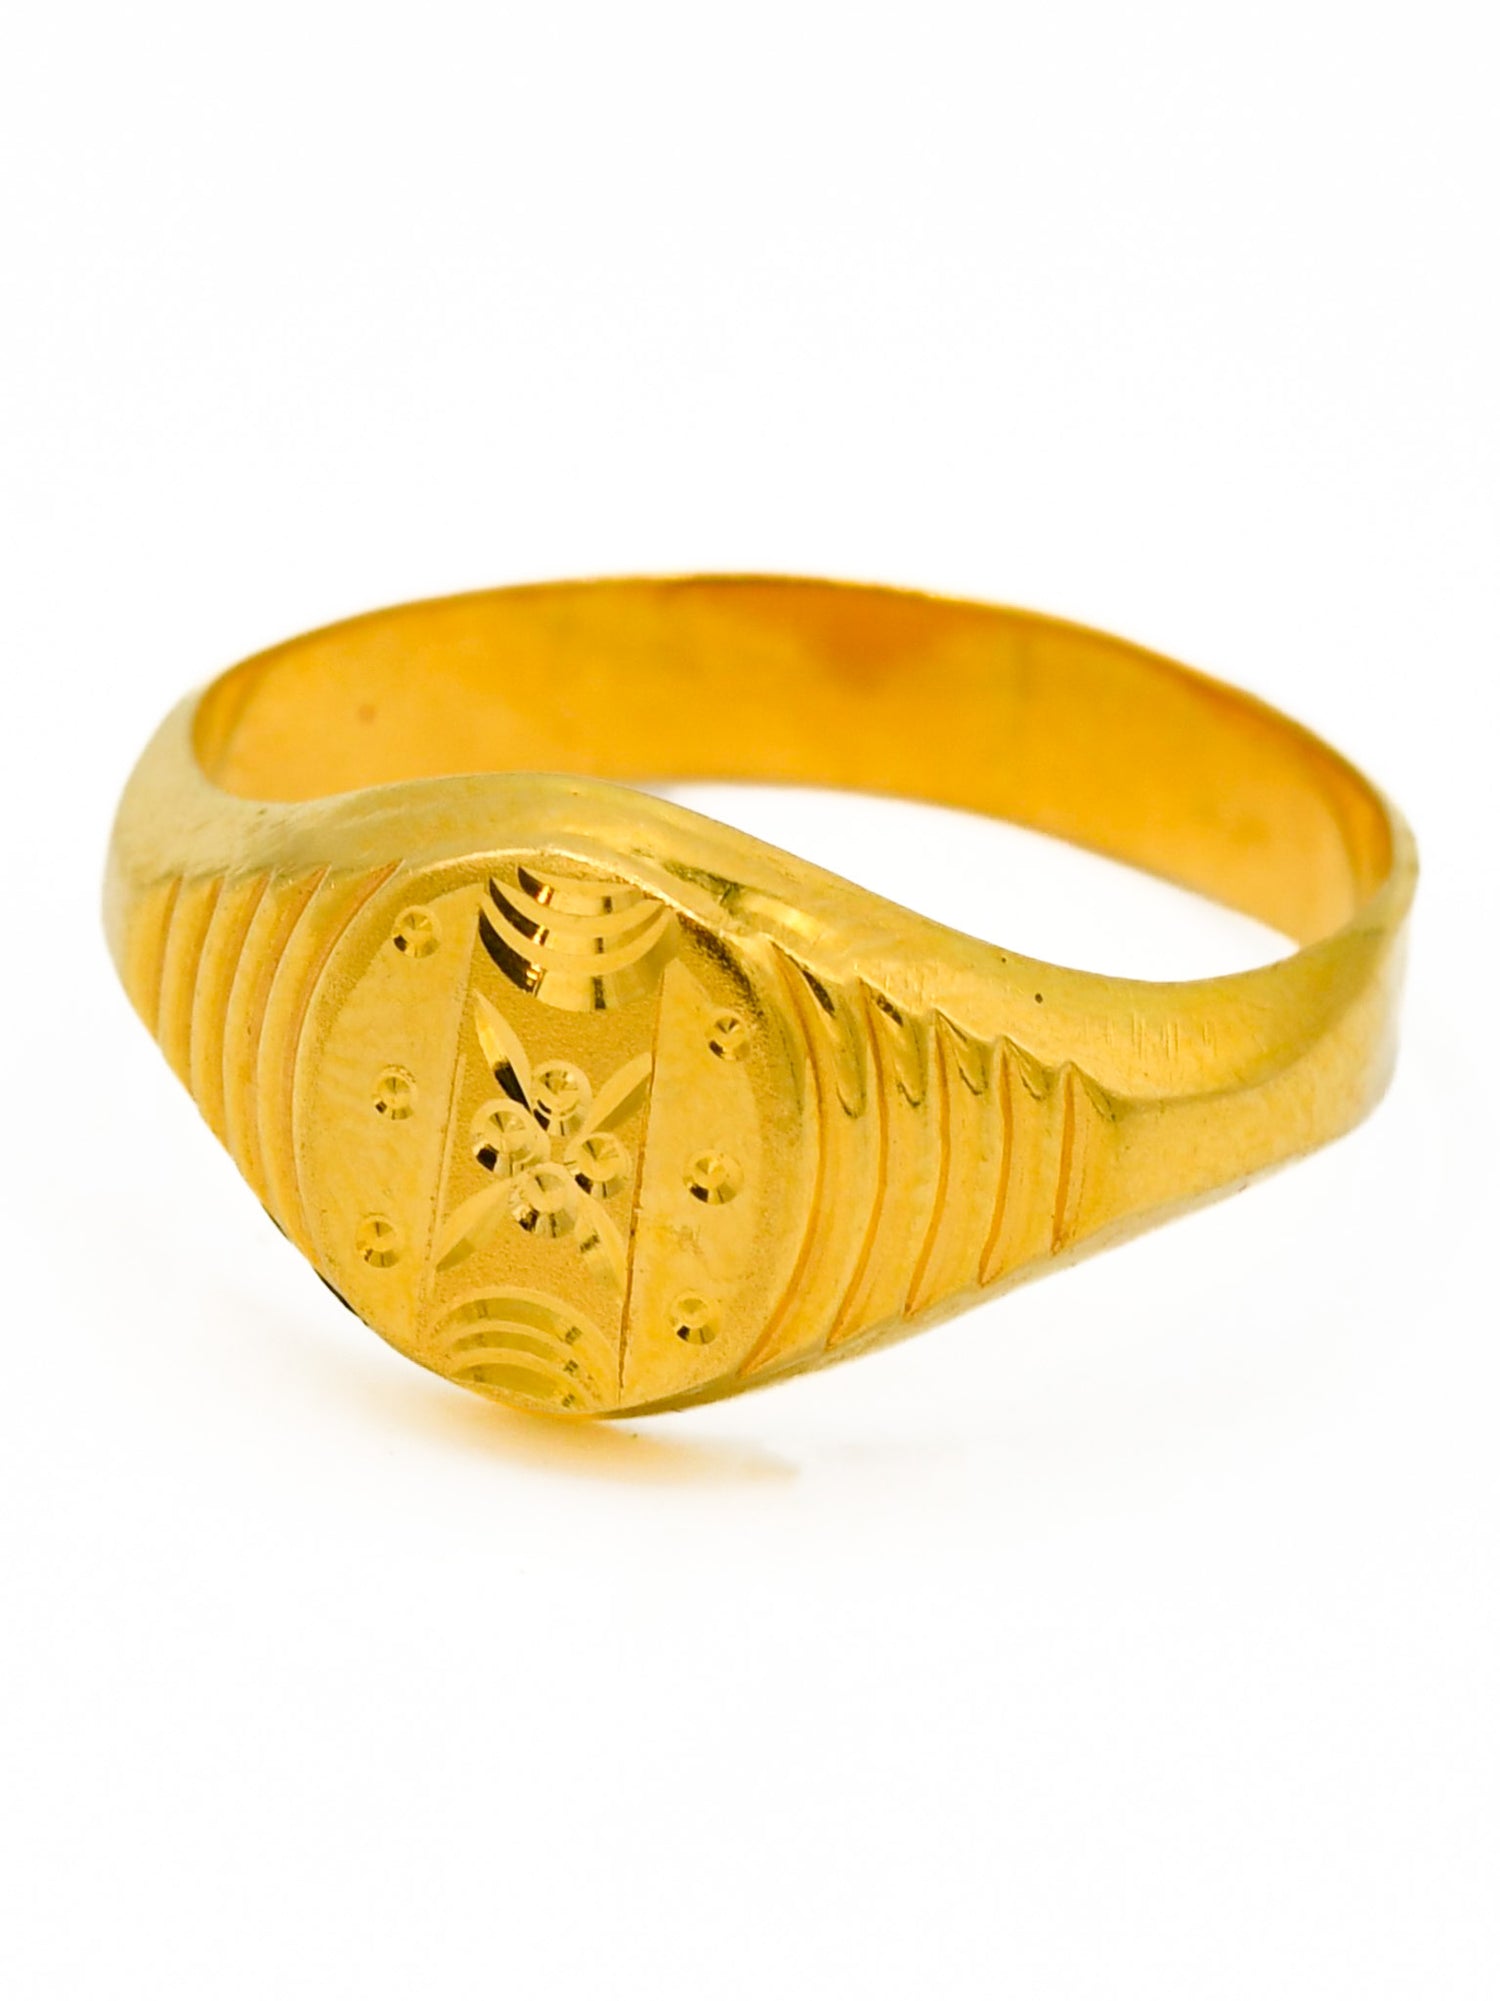 22ct Gold Mens Ring - Roop Darshan